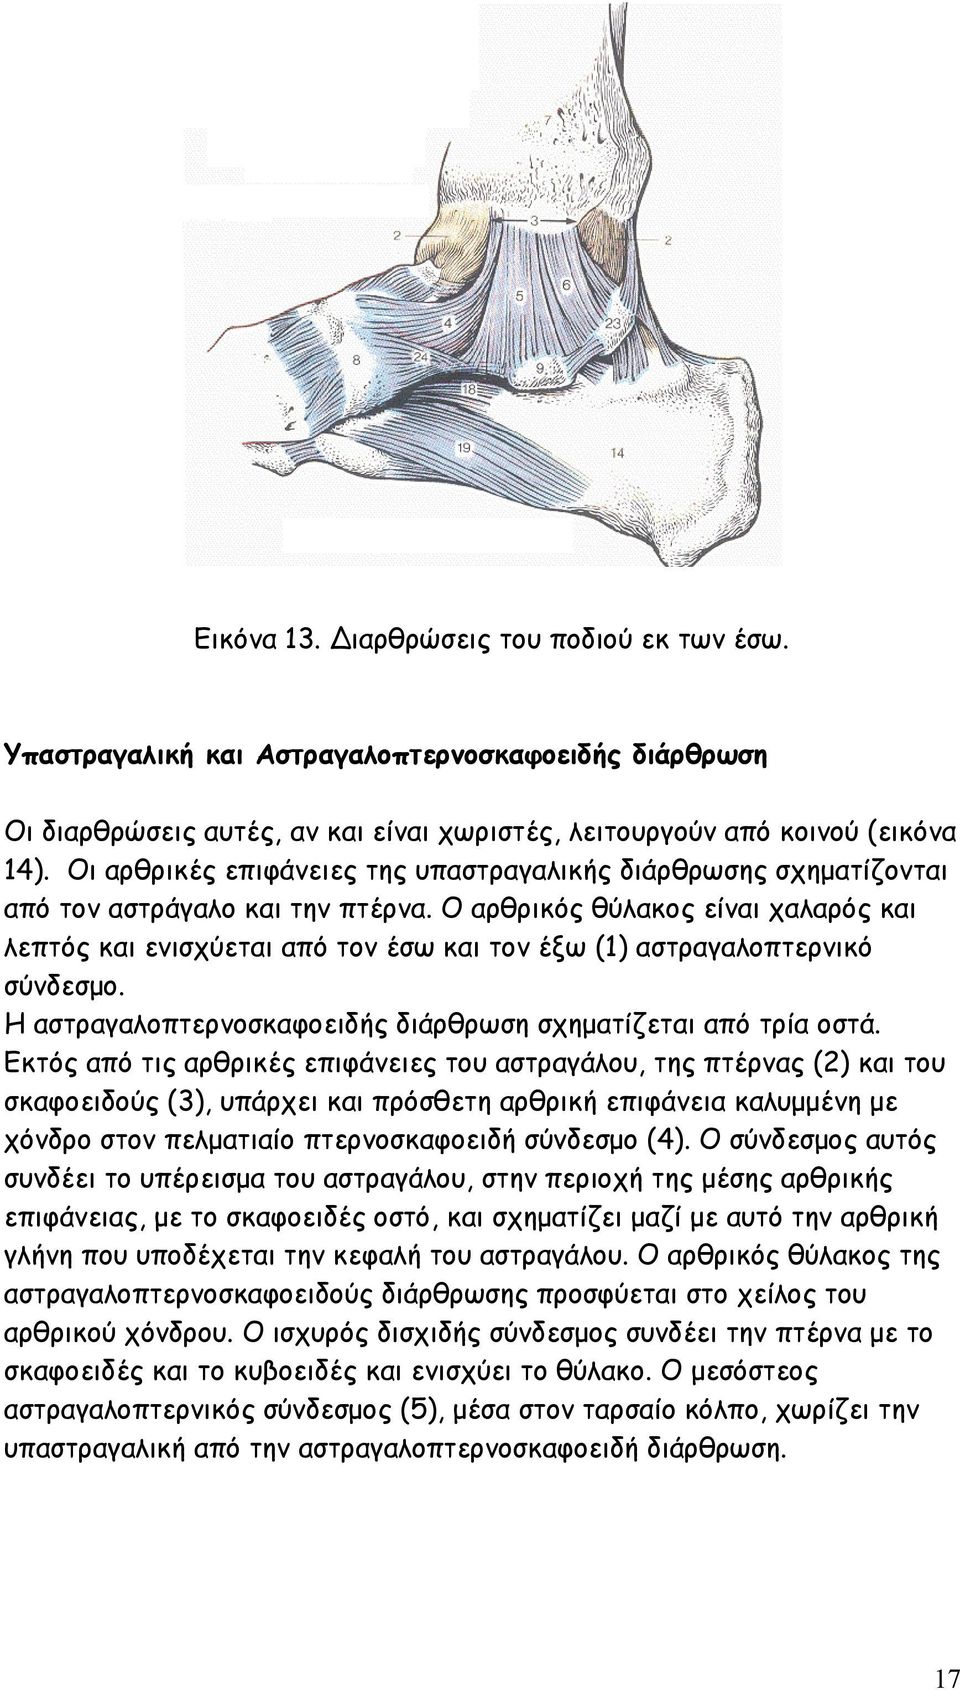 Ο αρθρικός θύλακος είναι χαλαρός και λεπτός και ενισχύεται από τον έσω και τον έξω (1) αστραγαλοπτερνικό σύνδεσµο. Η αστραγαλοπτερνοσκαφοειδής διάρθρωση σχηµατίζεται από τρία οστά.